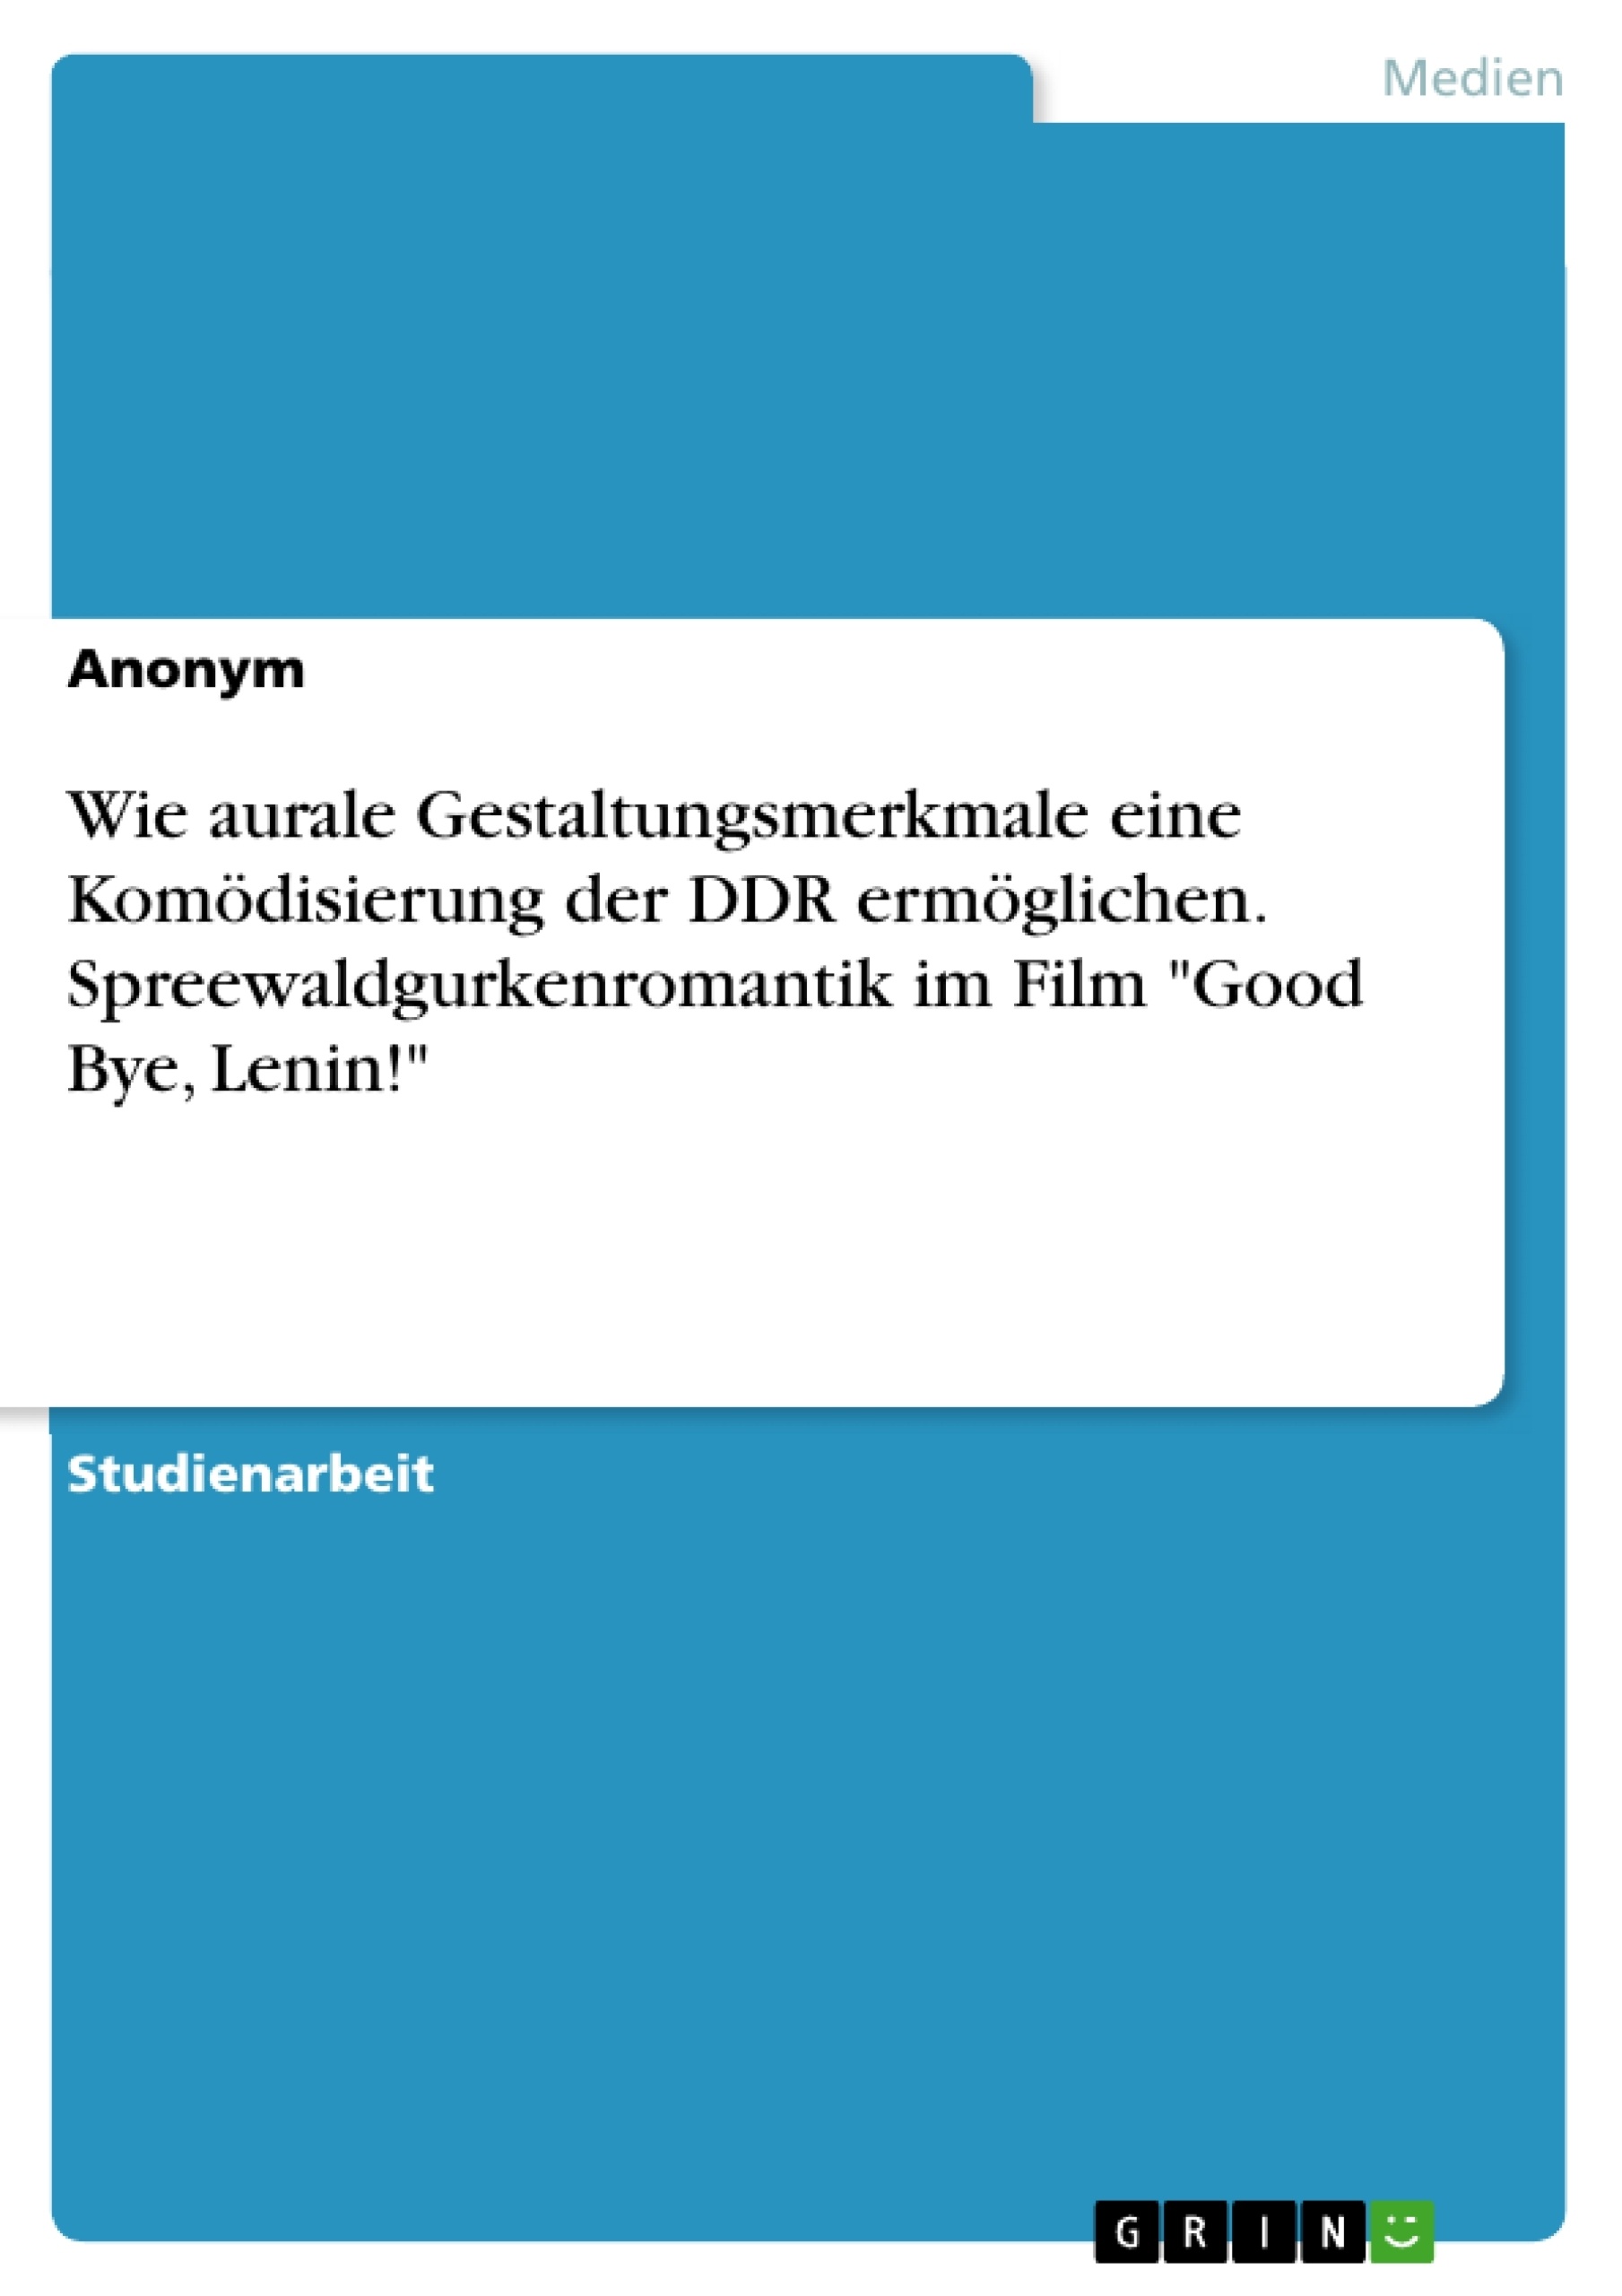 Título: Wie aurale Gestaltungsmerkmale eine Komödisierung der DDR ermöglichen. Spreewaldgurkenromantik im Film "Good Bye, Lenin!"